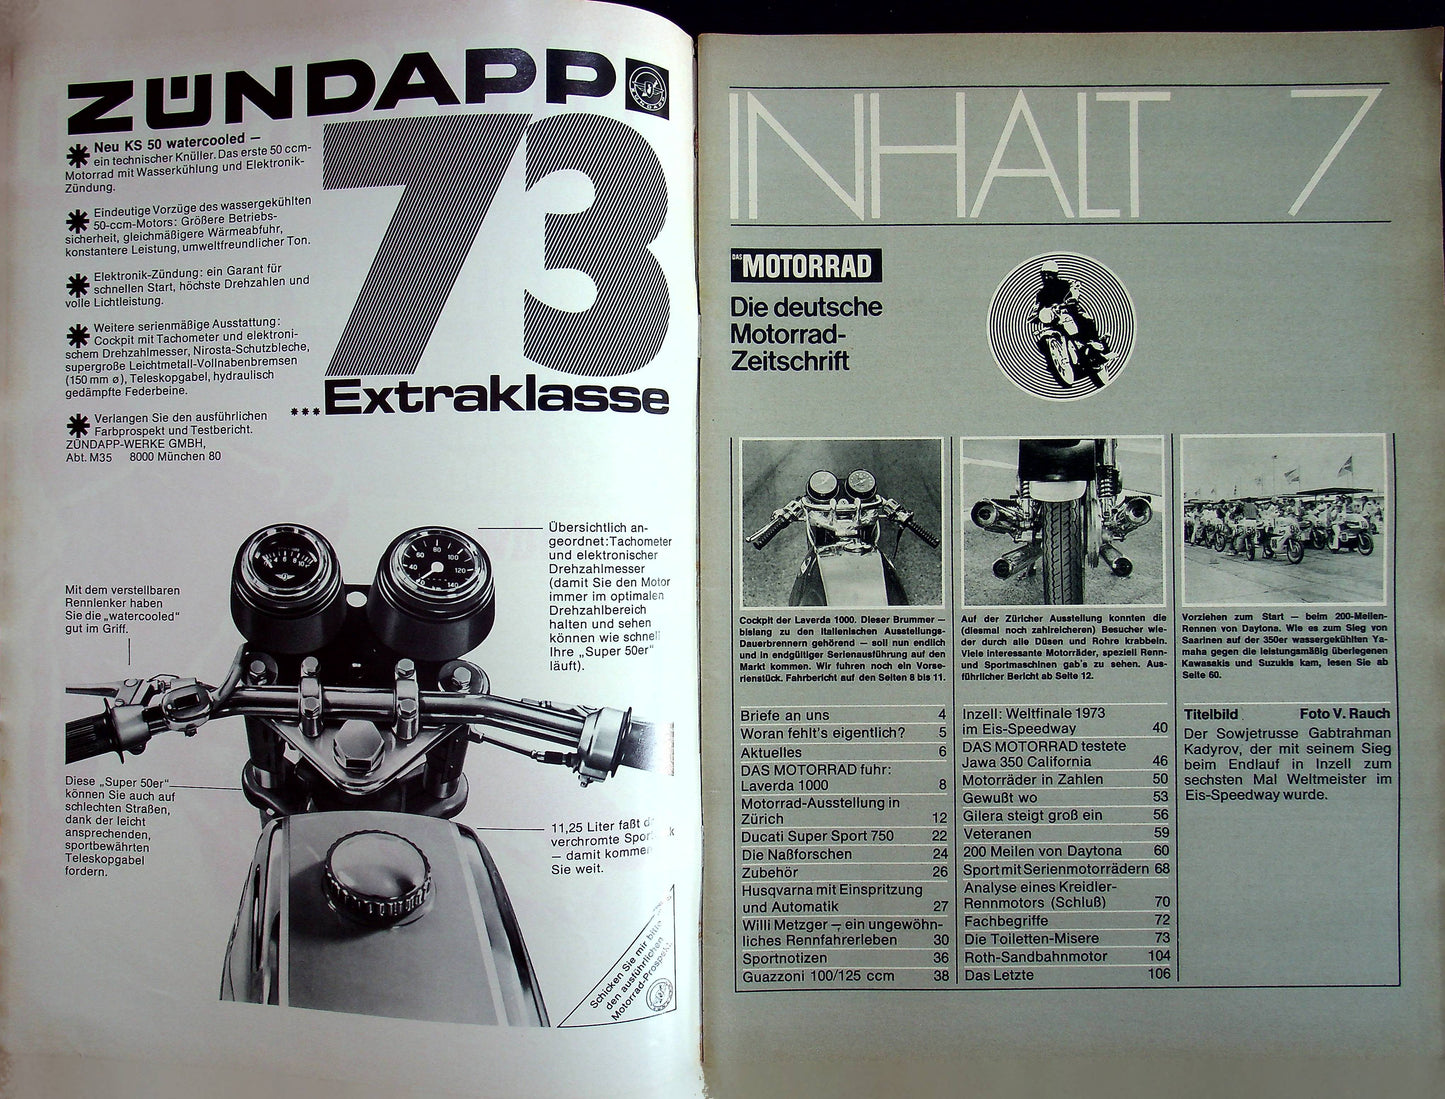 Motorrad 07/1973